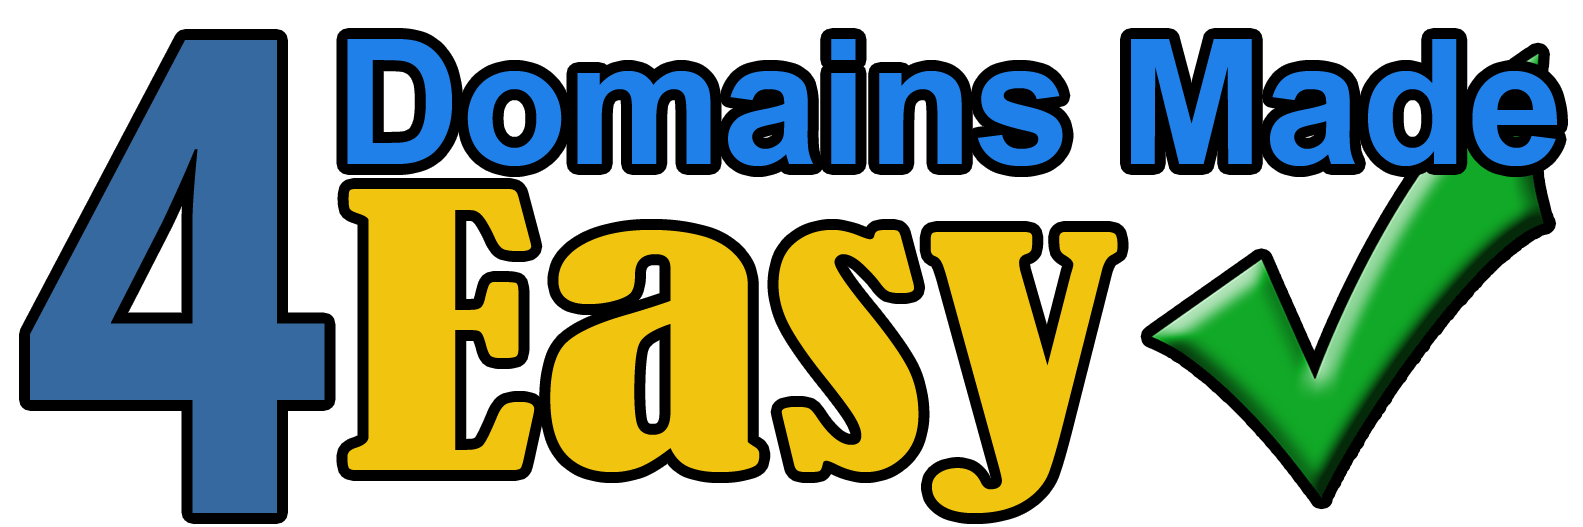 4DME.COM | Domain Names, Hosting, e-Comerce and more